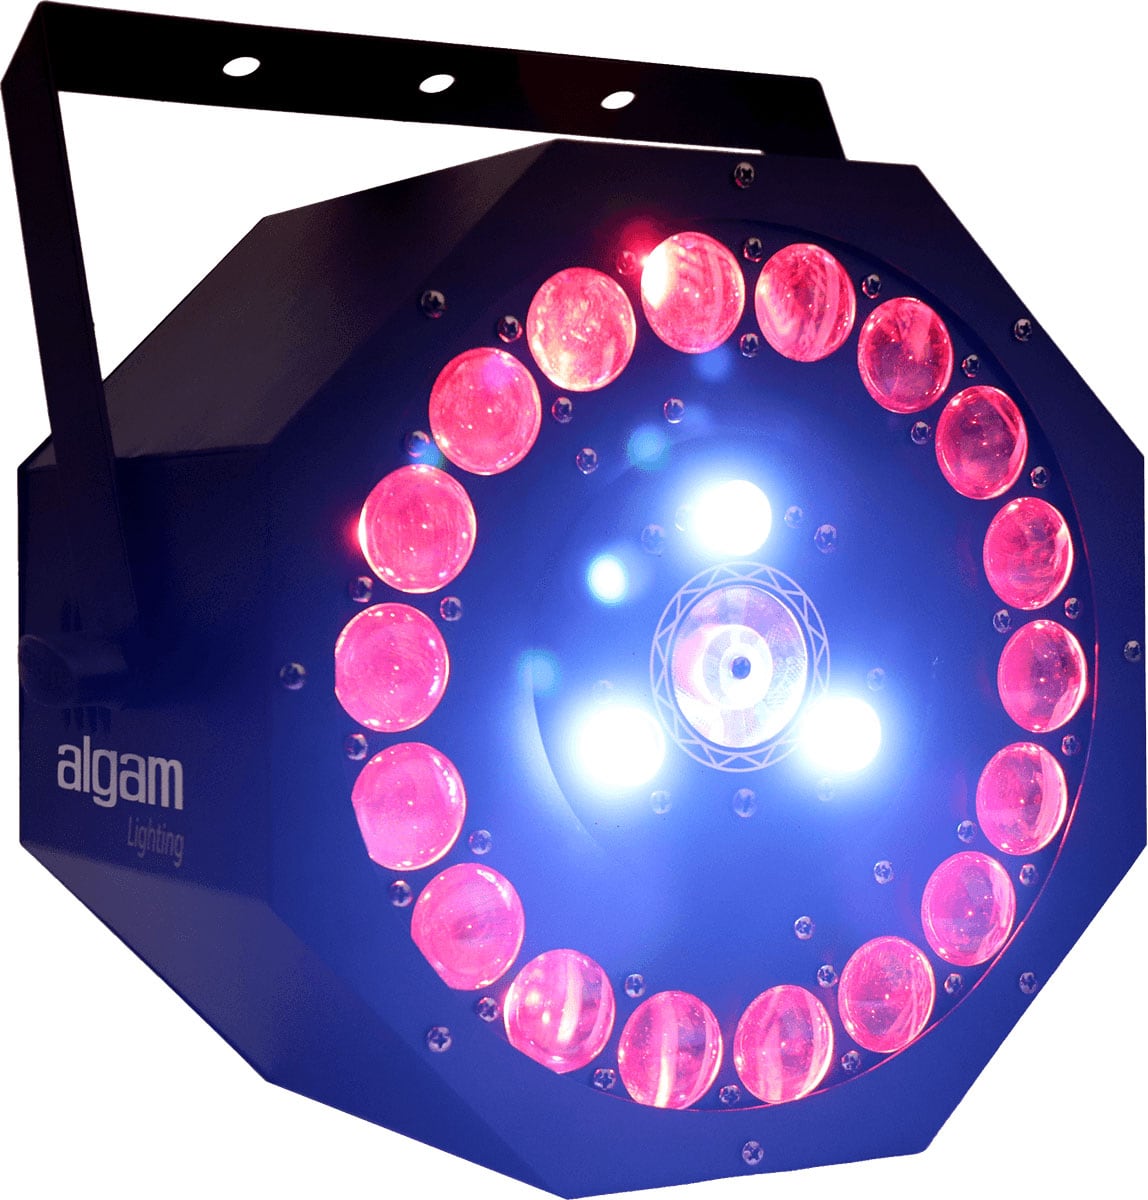 ALGAM LIGHTING SUNFLOWER - 3 X 18 W 3 IN 1 LED-EFFEKT MIT LASER